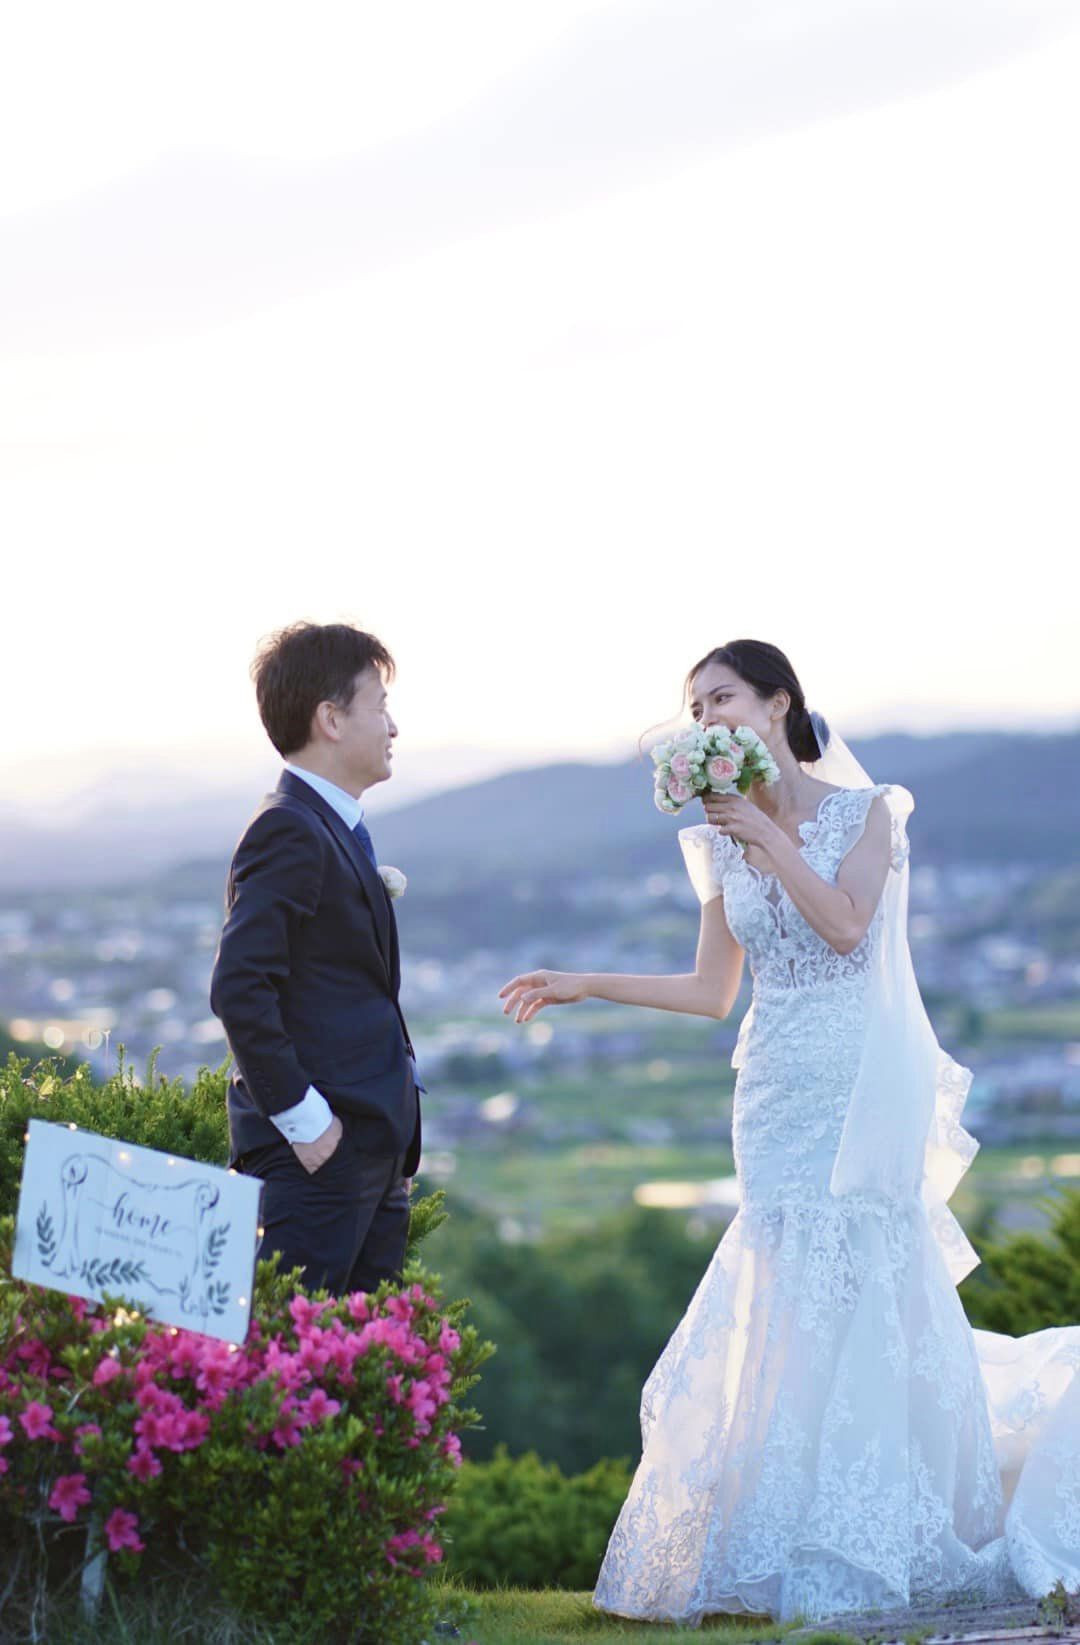 Chồng Nhật ngại tạo dáng, vợ Việt chờ 5 năm chụp ảnh cưới tuyệt đẹp 0 đồng - Ảnh 13.